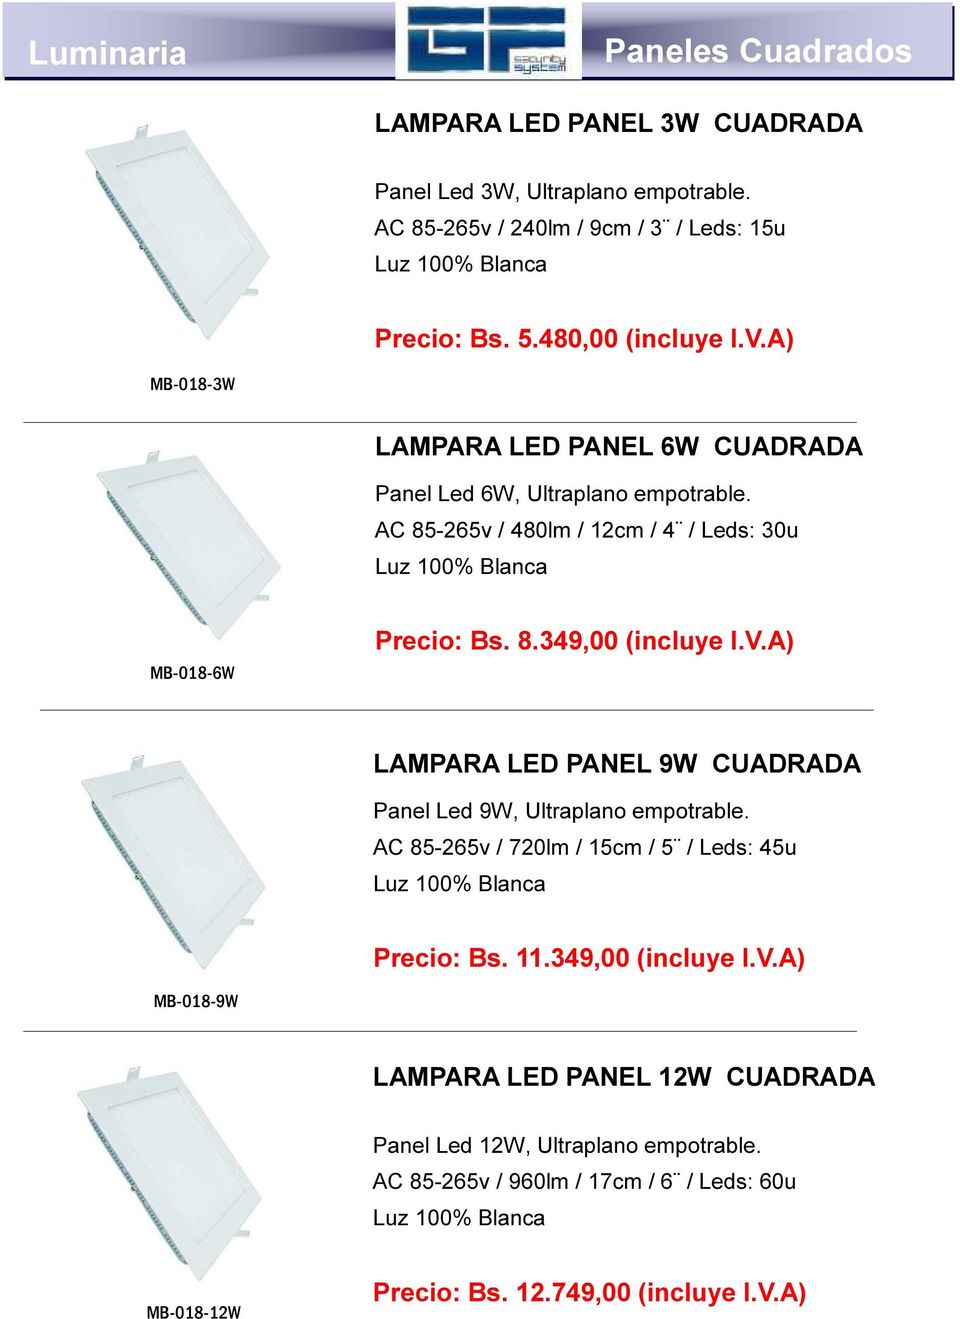 8.349,00 (incluye I.V.A) LAMPARA LED PANEL 9W CUADRADA Panel Led 9W, Ultraplano empotrable. AC 85-265v / 720lm / 15cm / 5 / Leds: 45u Precio: Bs. 11.